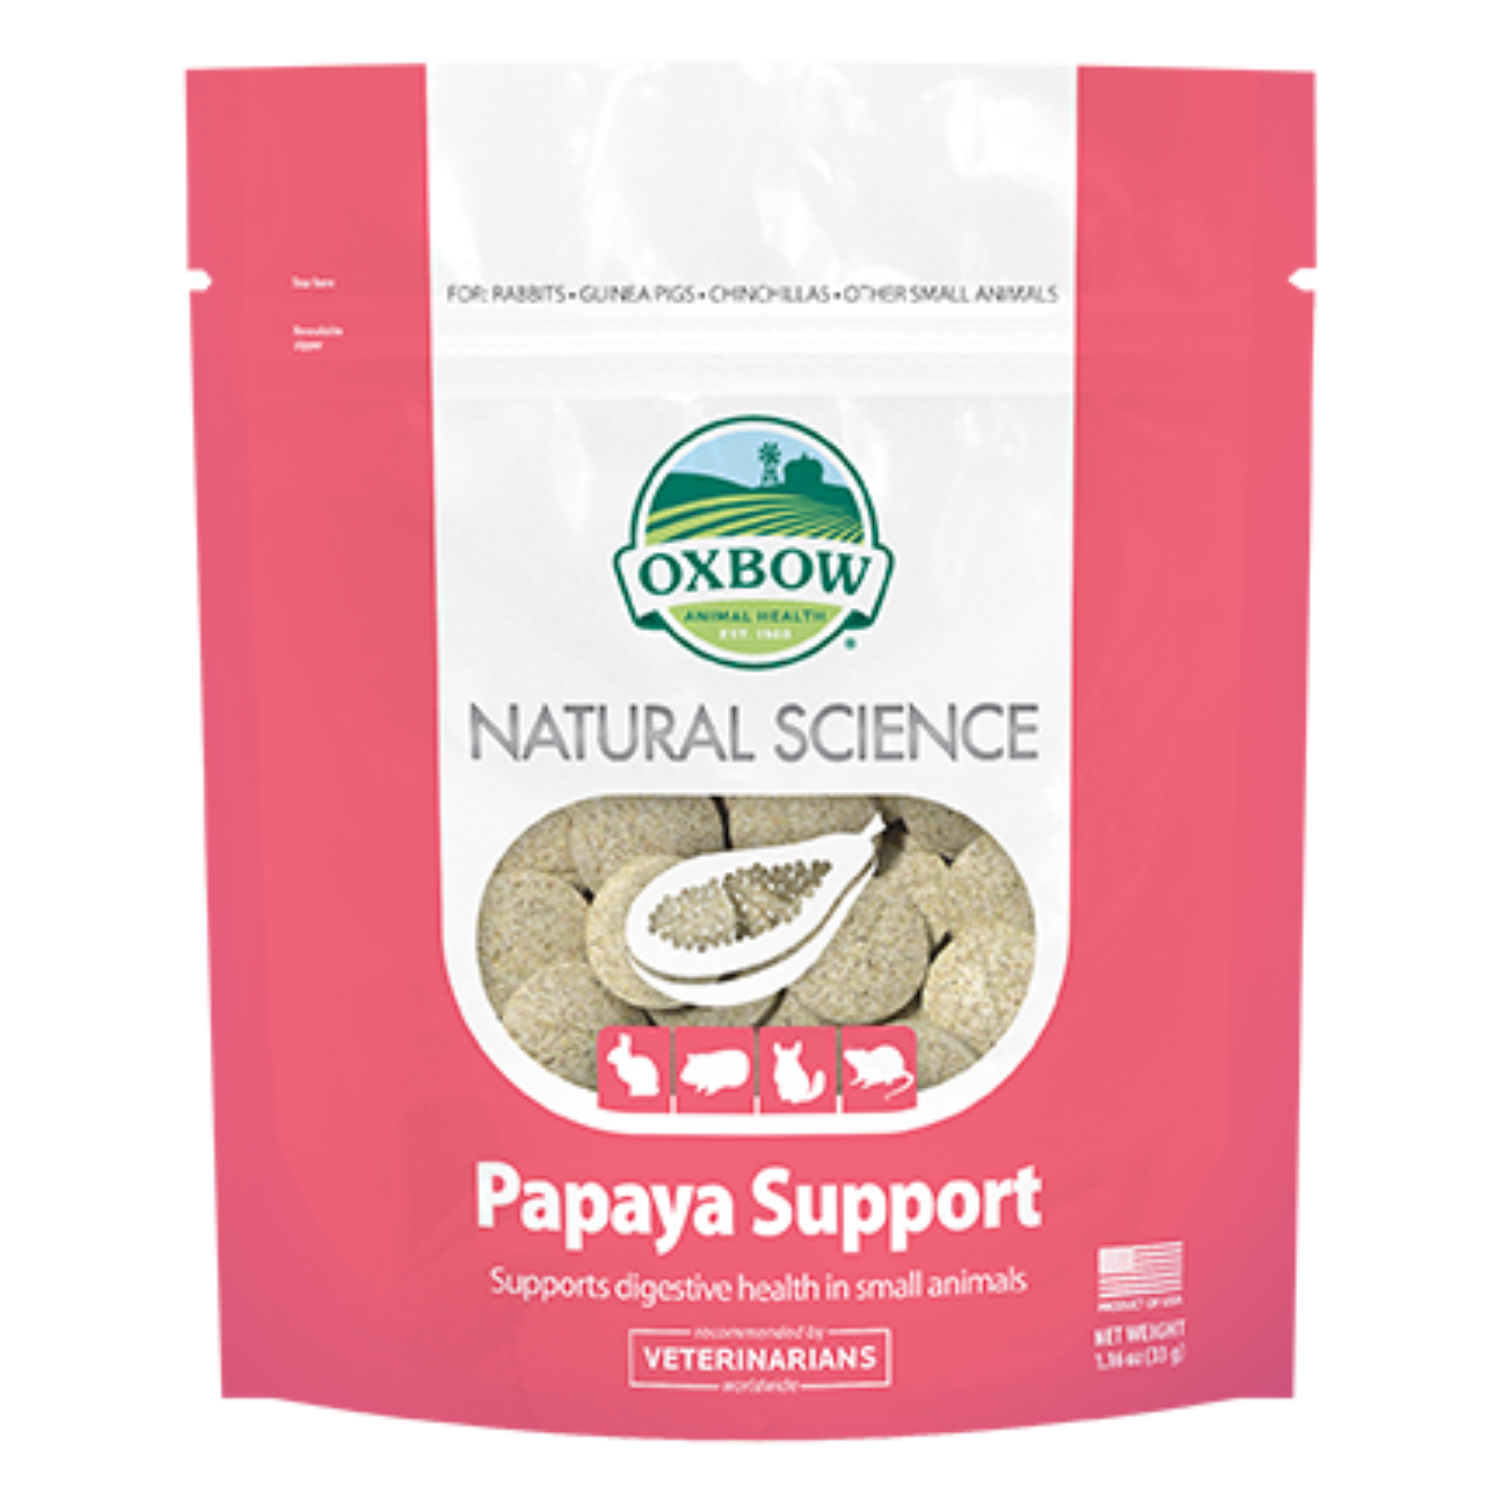 Oxbow Natural Science Papaya Support - 33g